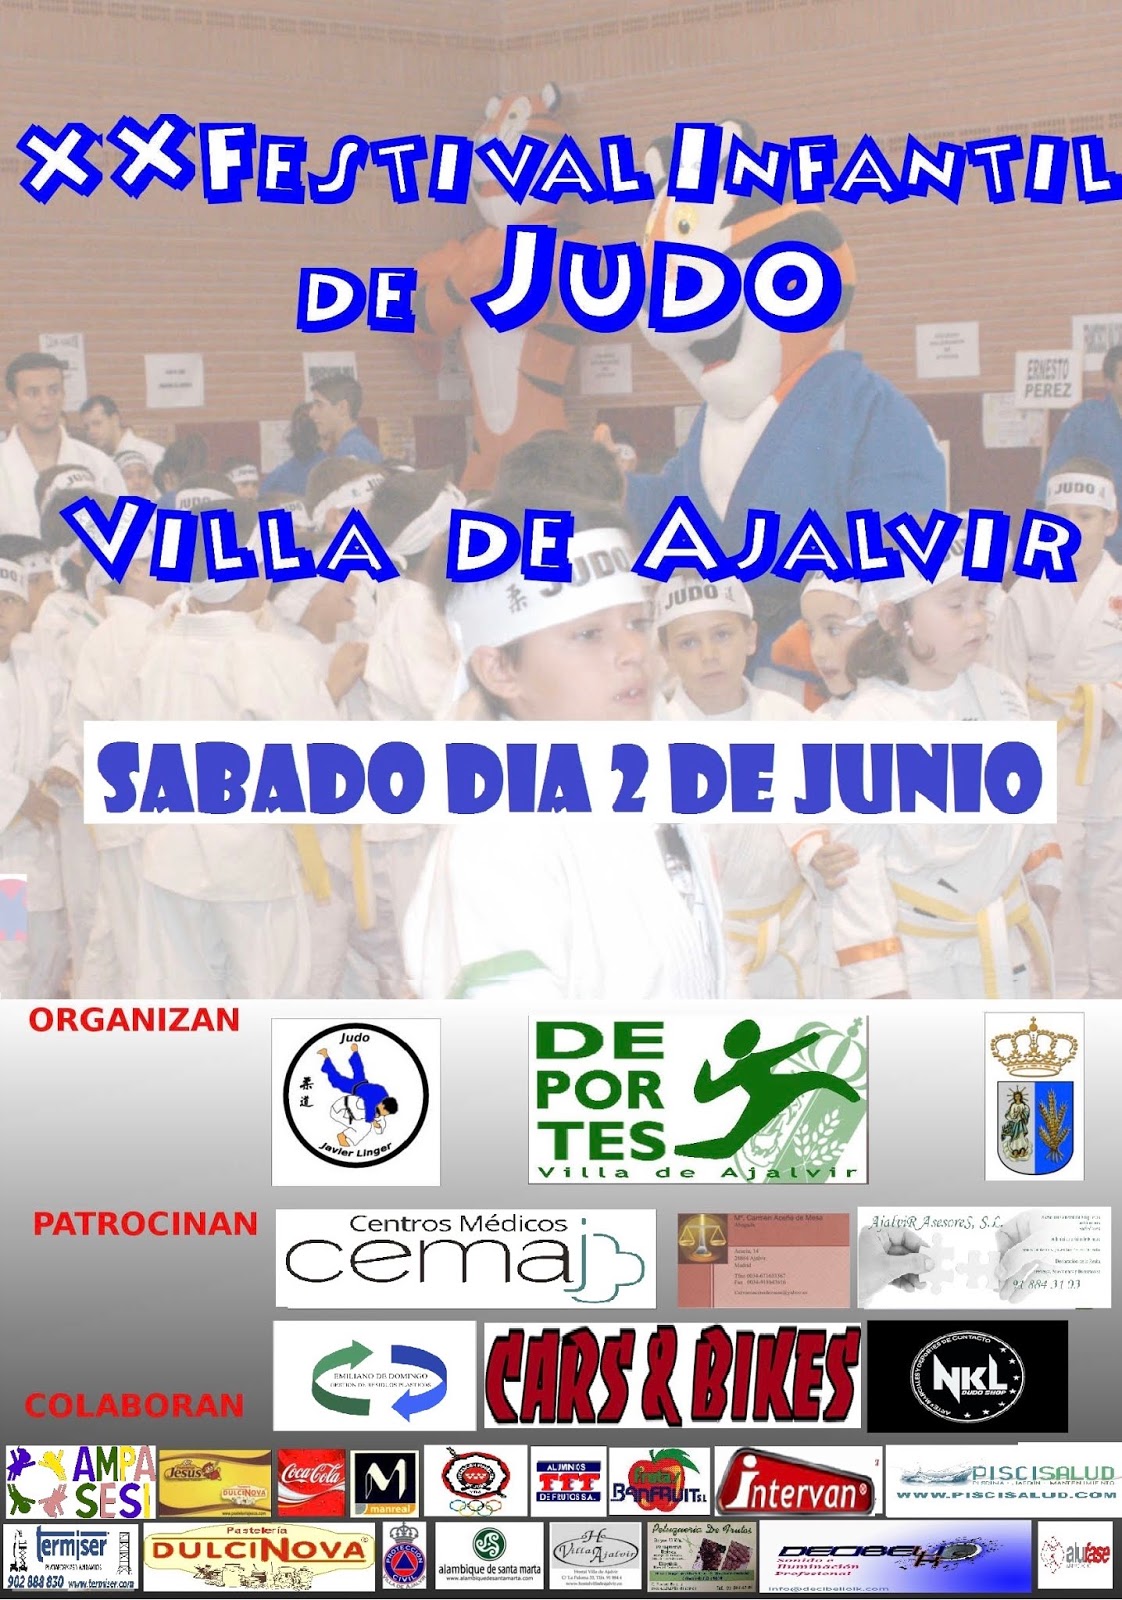 judofestival